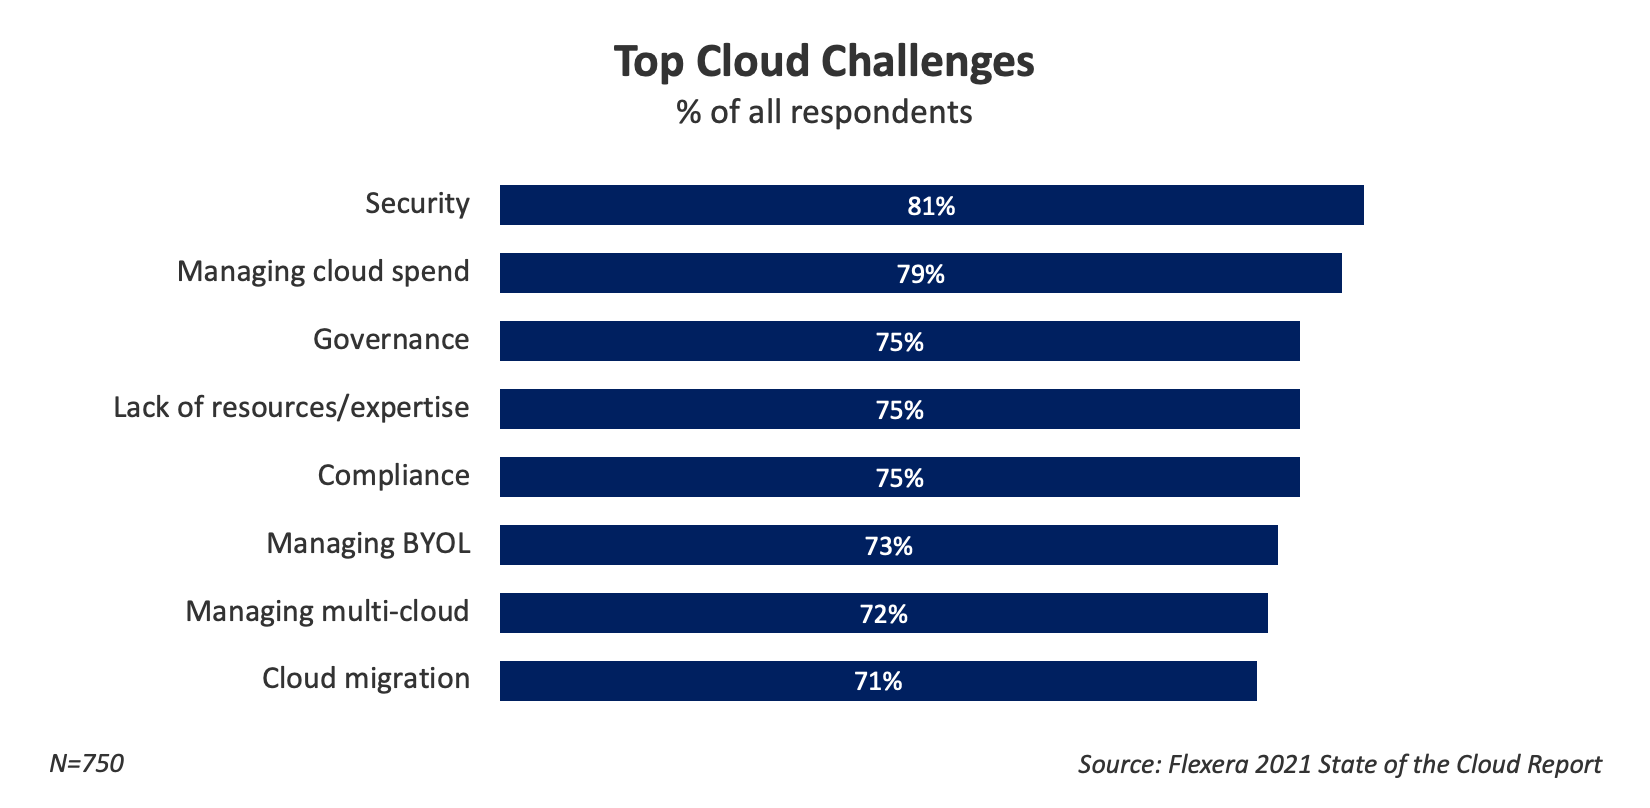 Top Cloud Challenges